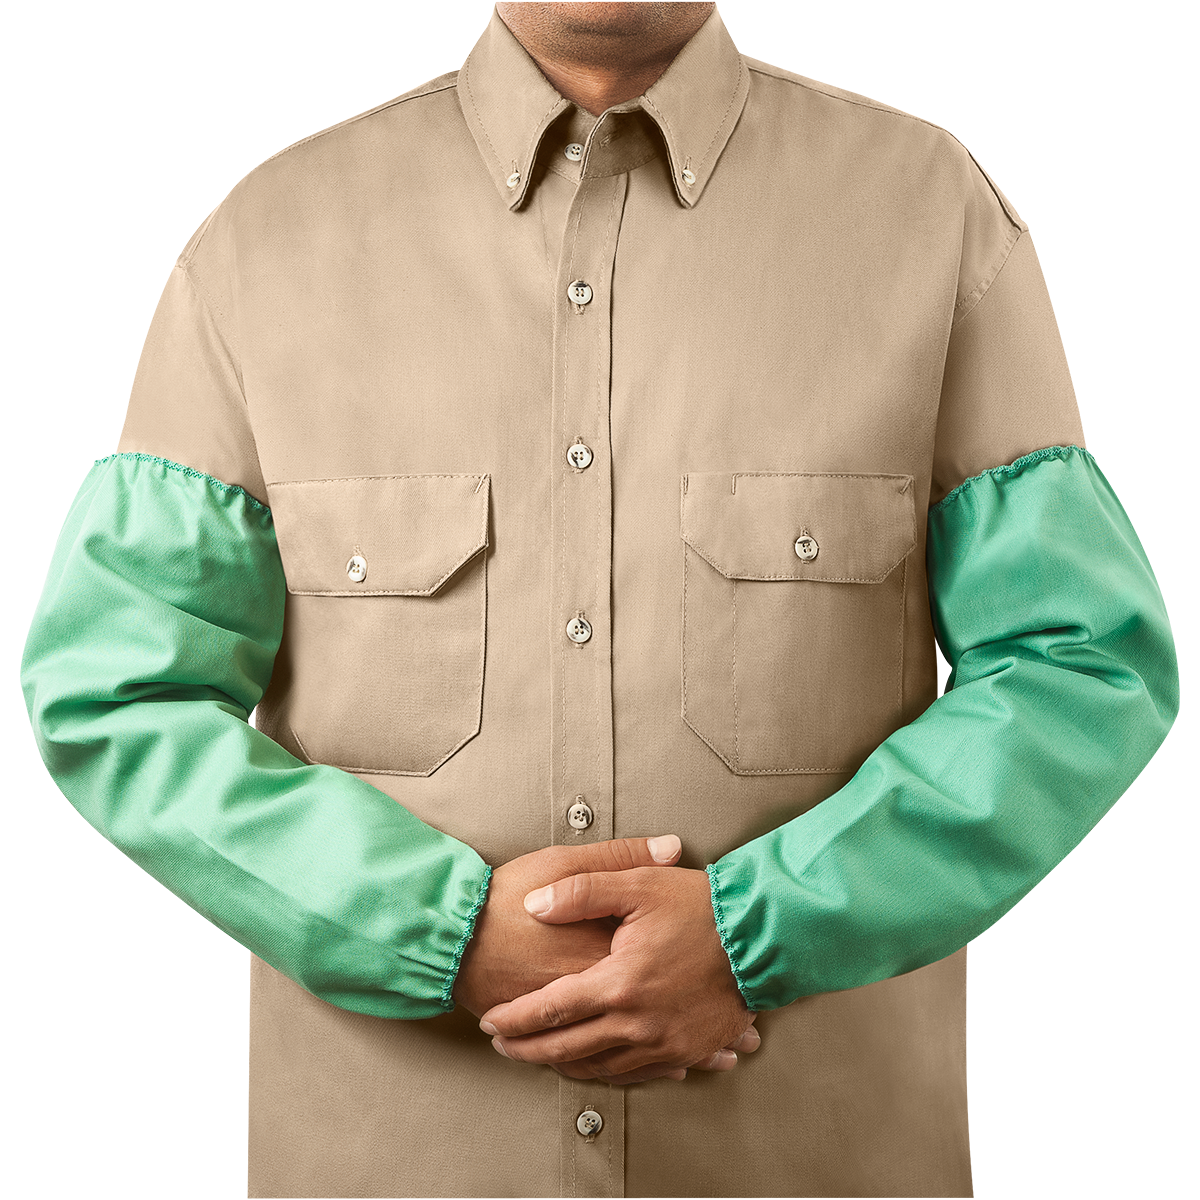 Steiner 9 oz FR Cotton Sleeves - Standard Elastic Cuff Style